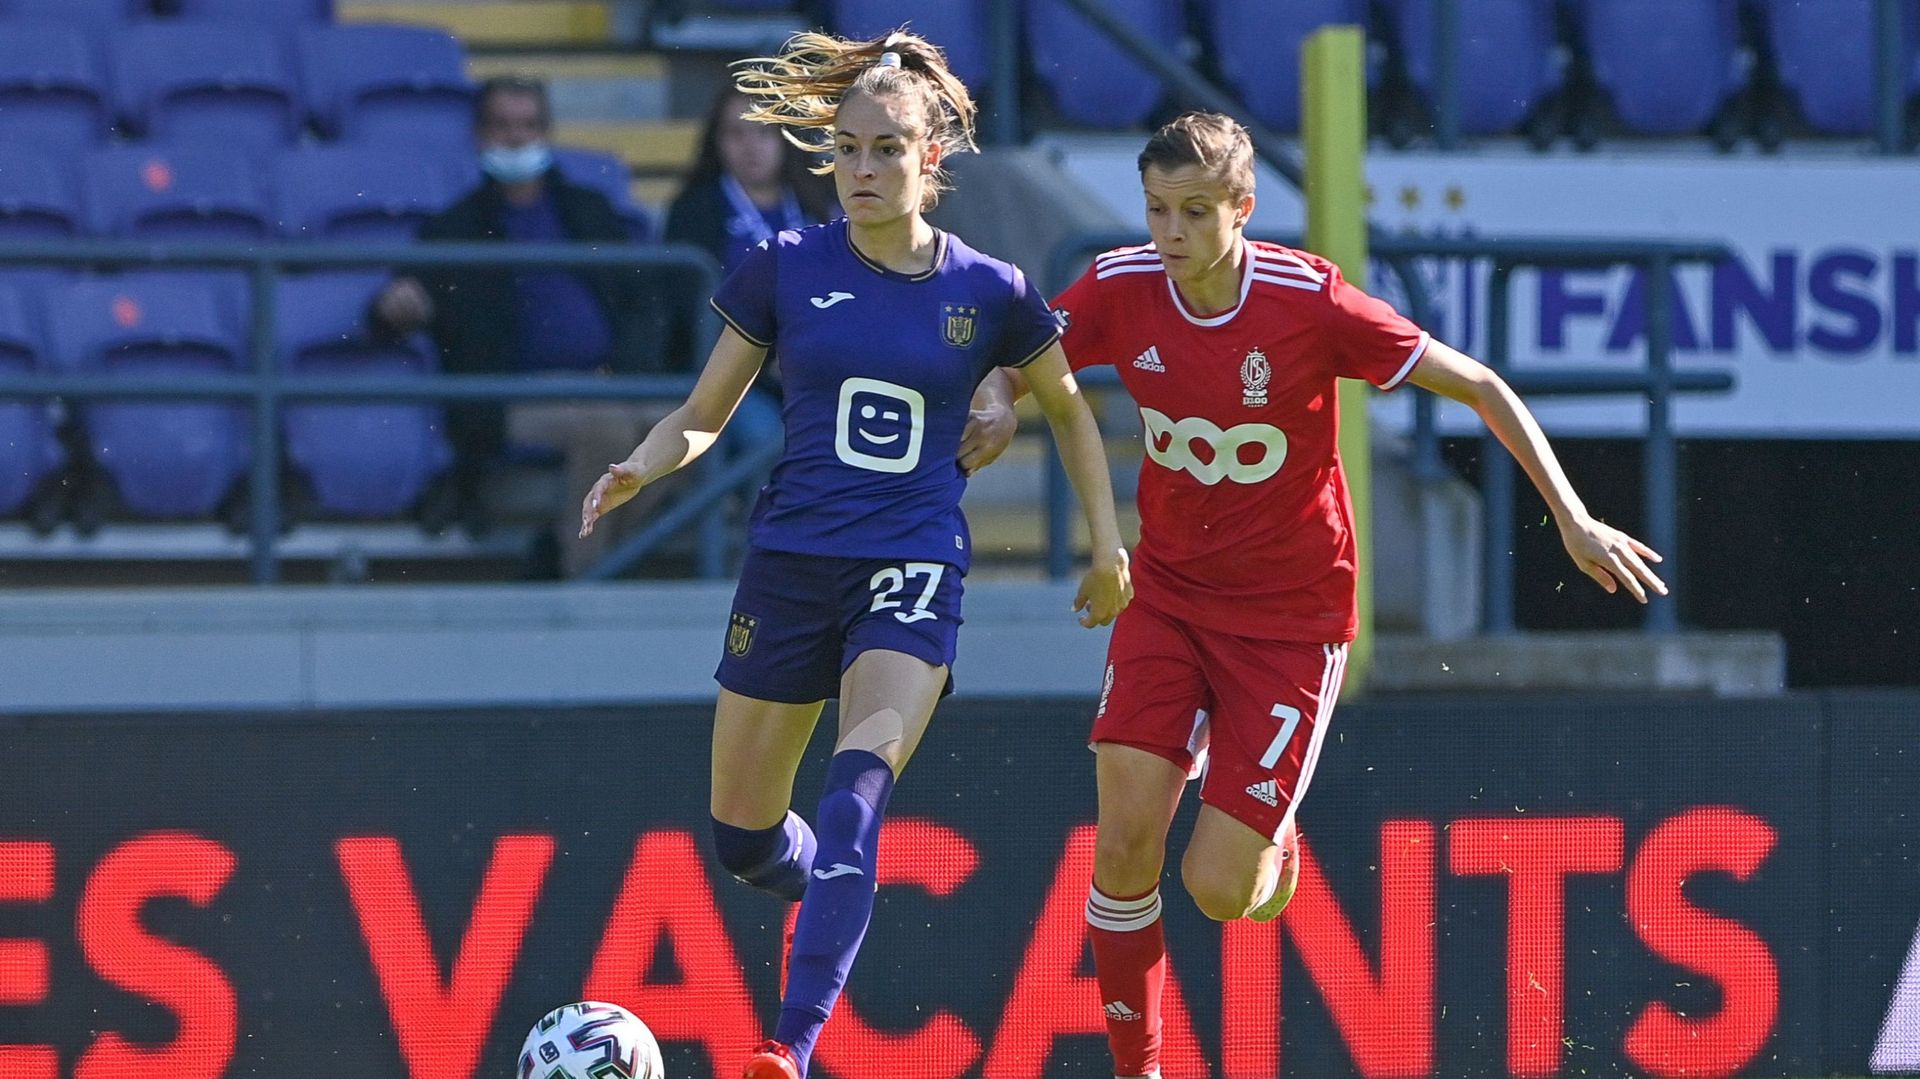 Le Standard Femina affrontait Anderlecht lors de la 15e journée de Super League féminine.